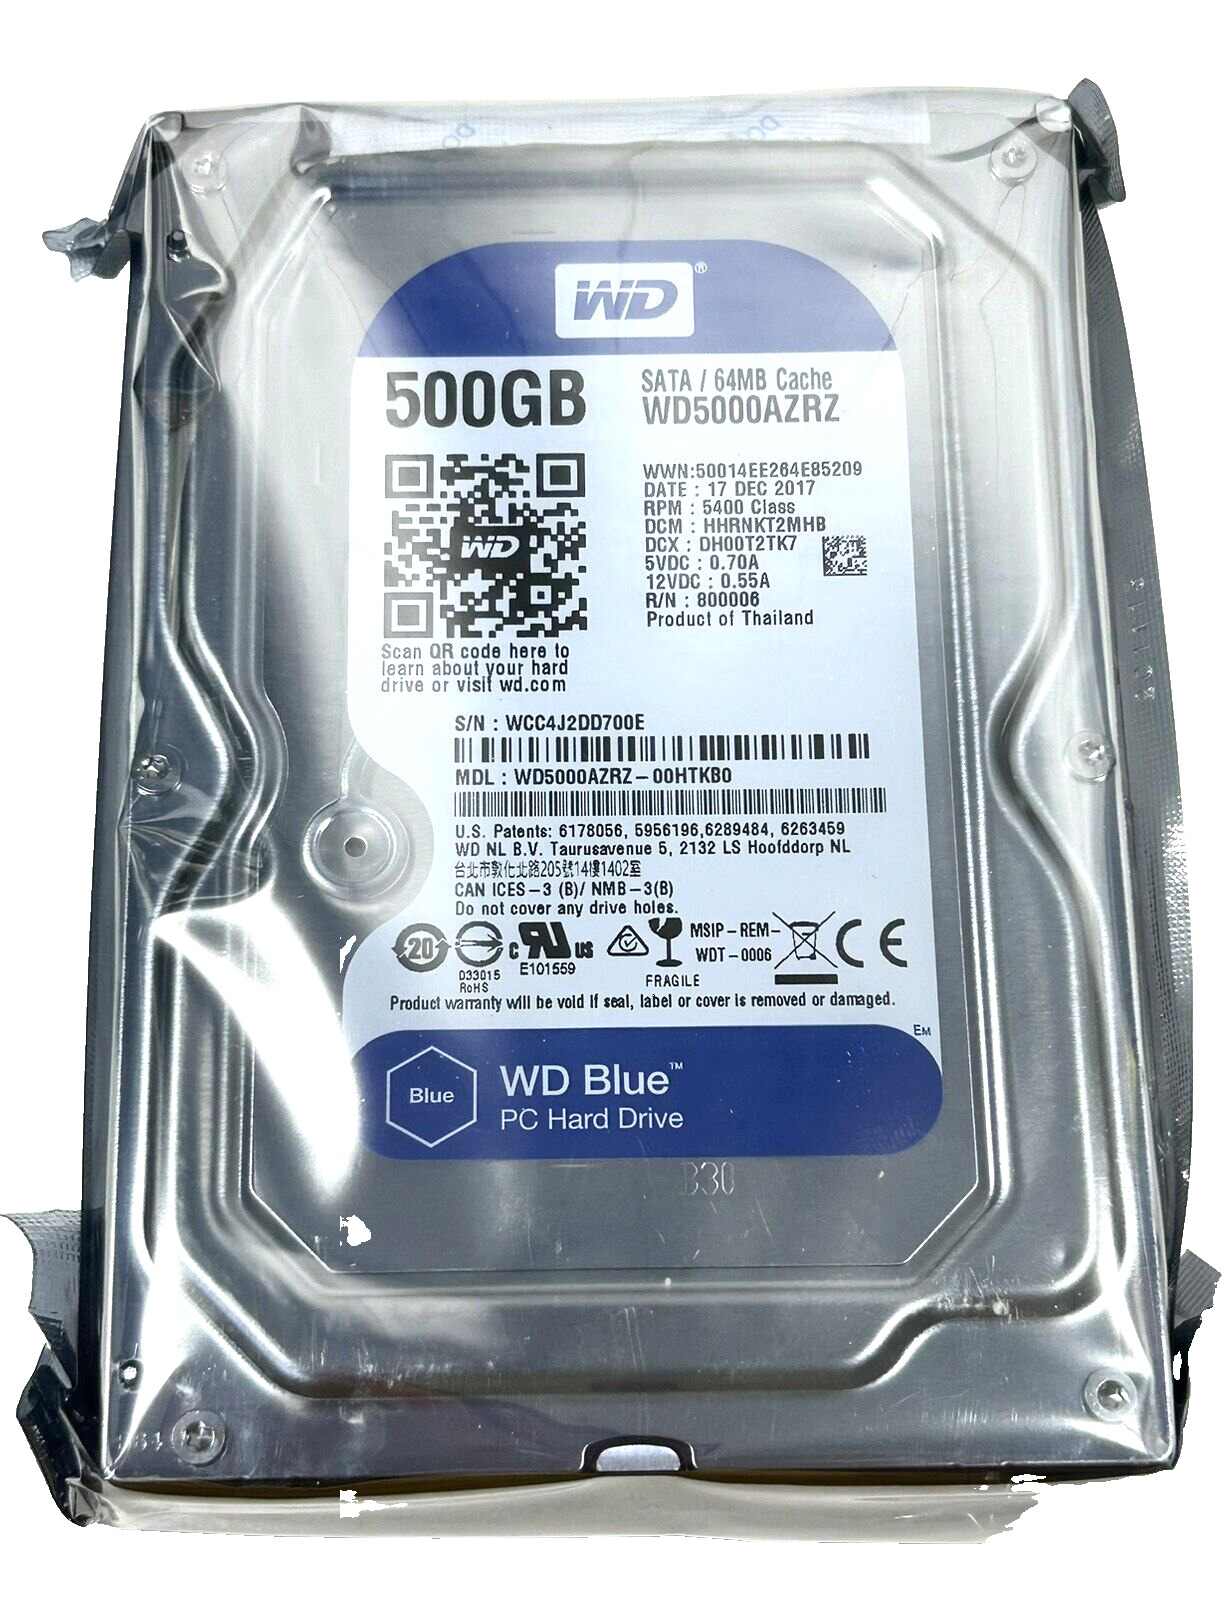 LOT OF 2 WD WD5000AZRZ Blue 500 GB 3.5-inch PC Hard Drive 500GB - NEW